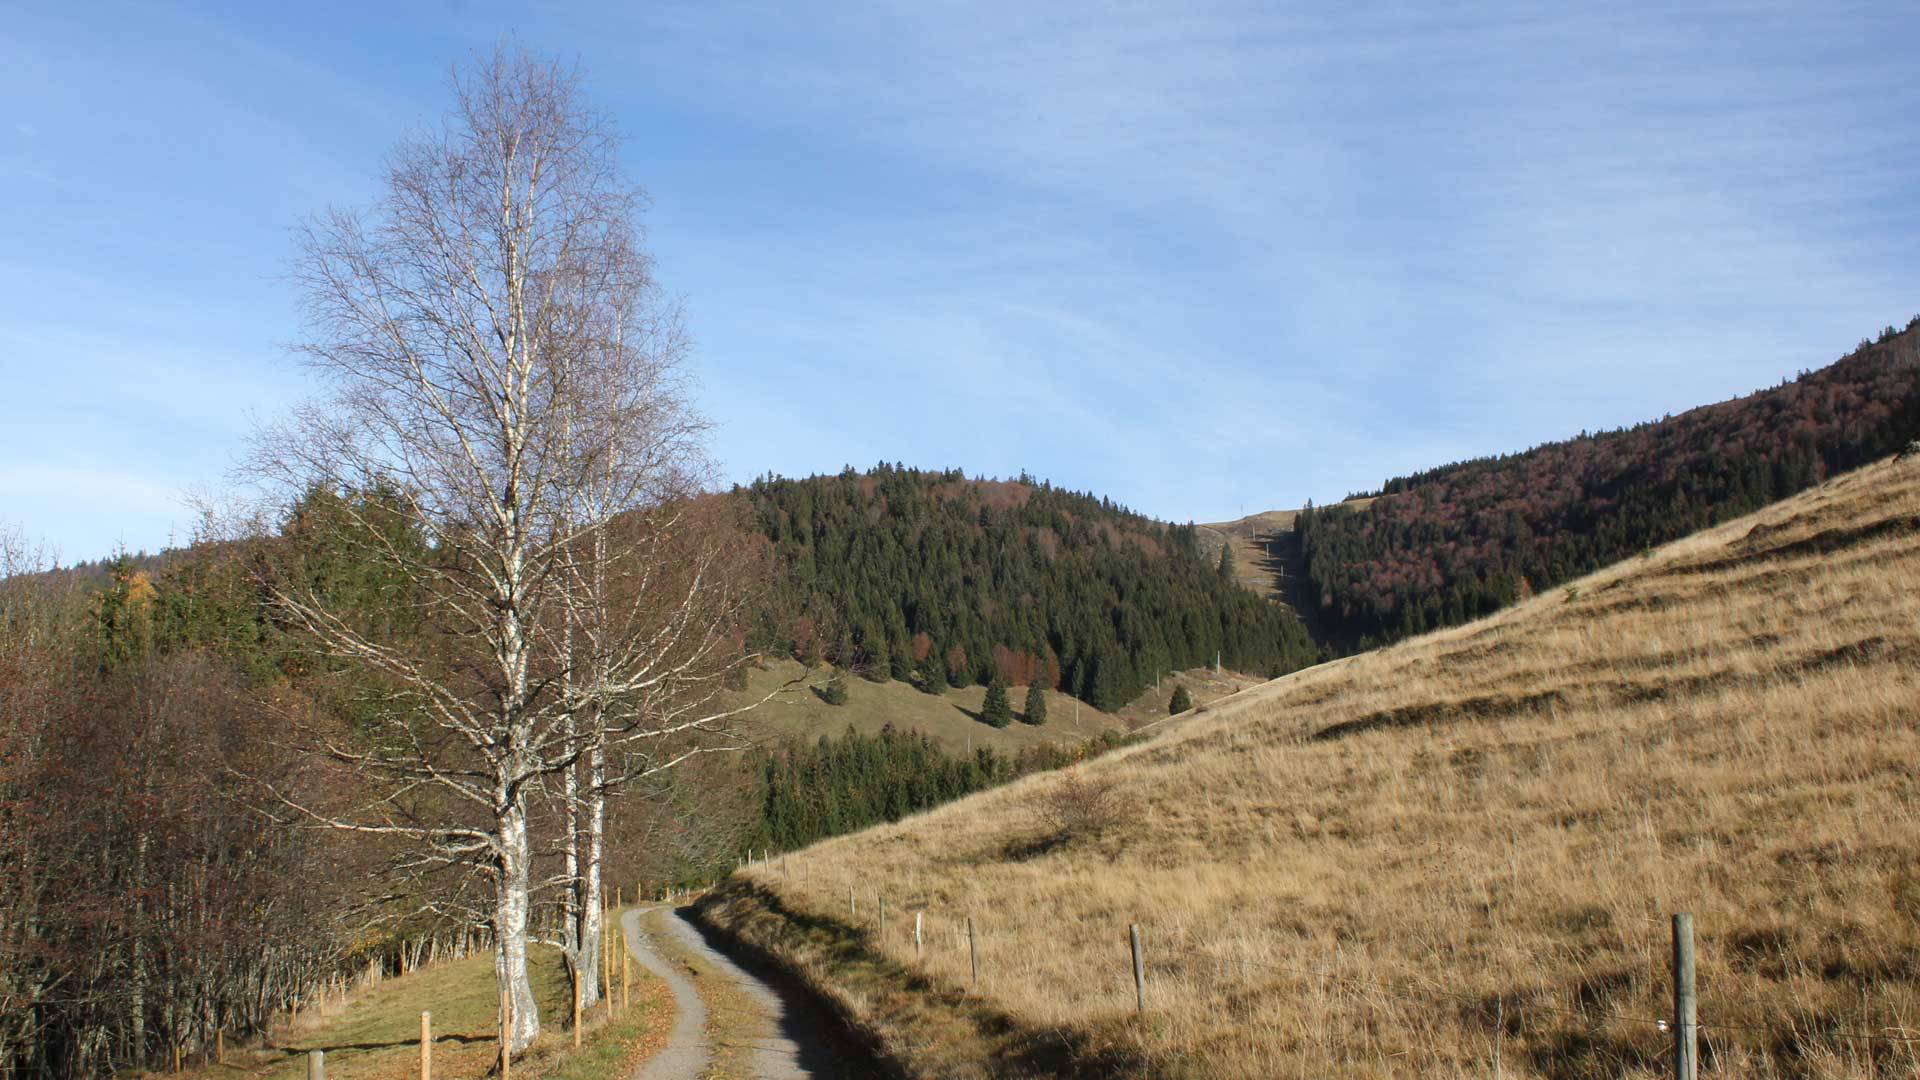 Im Herbst auf dem oberen Bernauer Panoramaweg mit Blich auf die Weide unterhalb der Krunkelbach Hütte